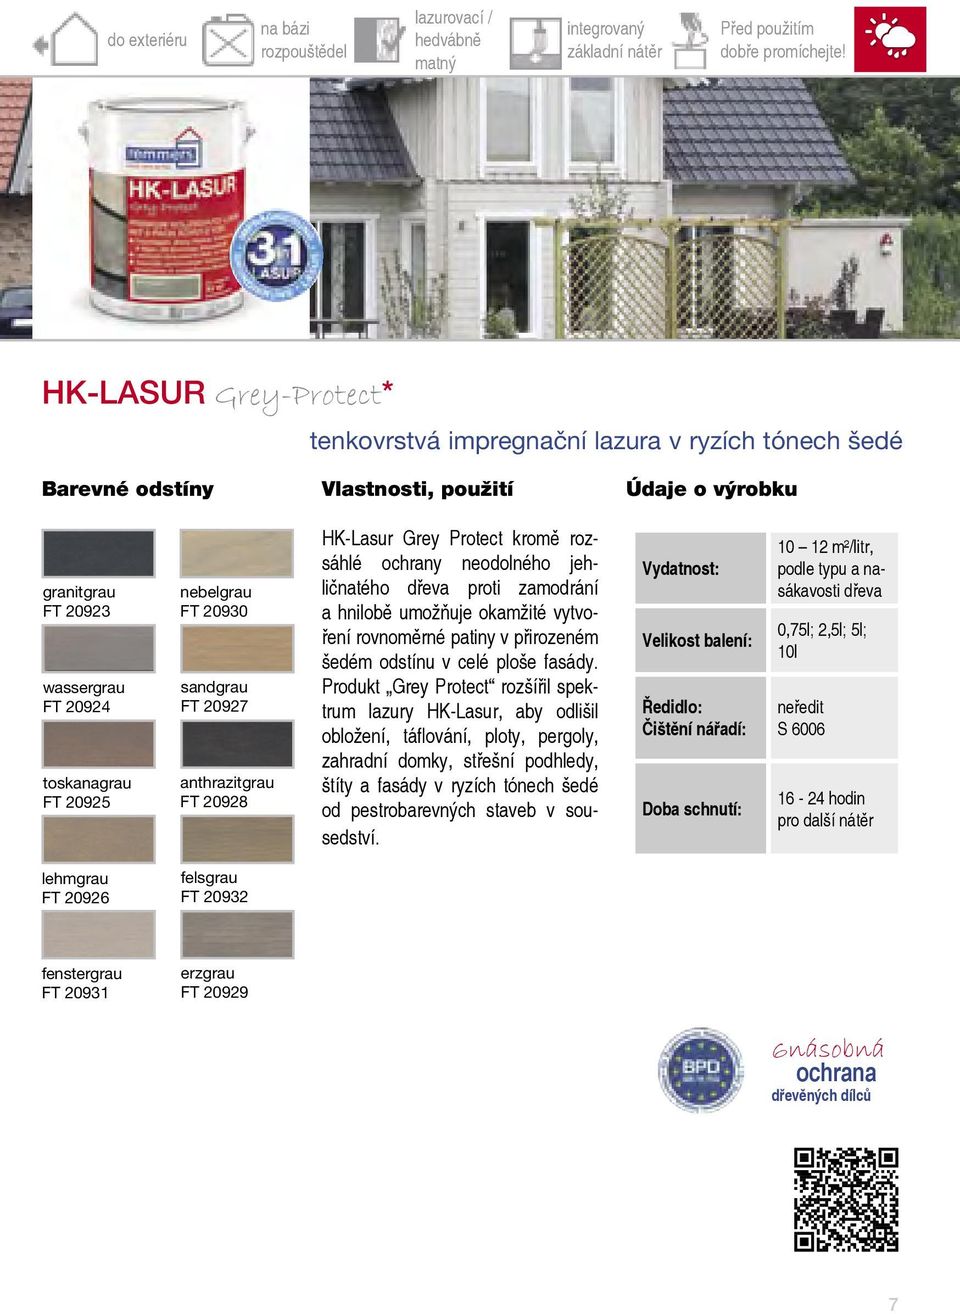 HK-Lasur Grey Protect kromě rozsáhlé ochrany neodolného jehličnatého proti zamodrání a hnilobě umožňuje okamžité vytvoření rovnoměrné patiny v přirozeném šedém odstínu v celé ploše fasády.